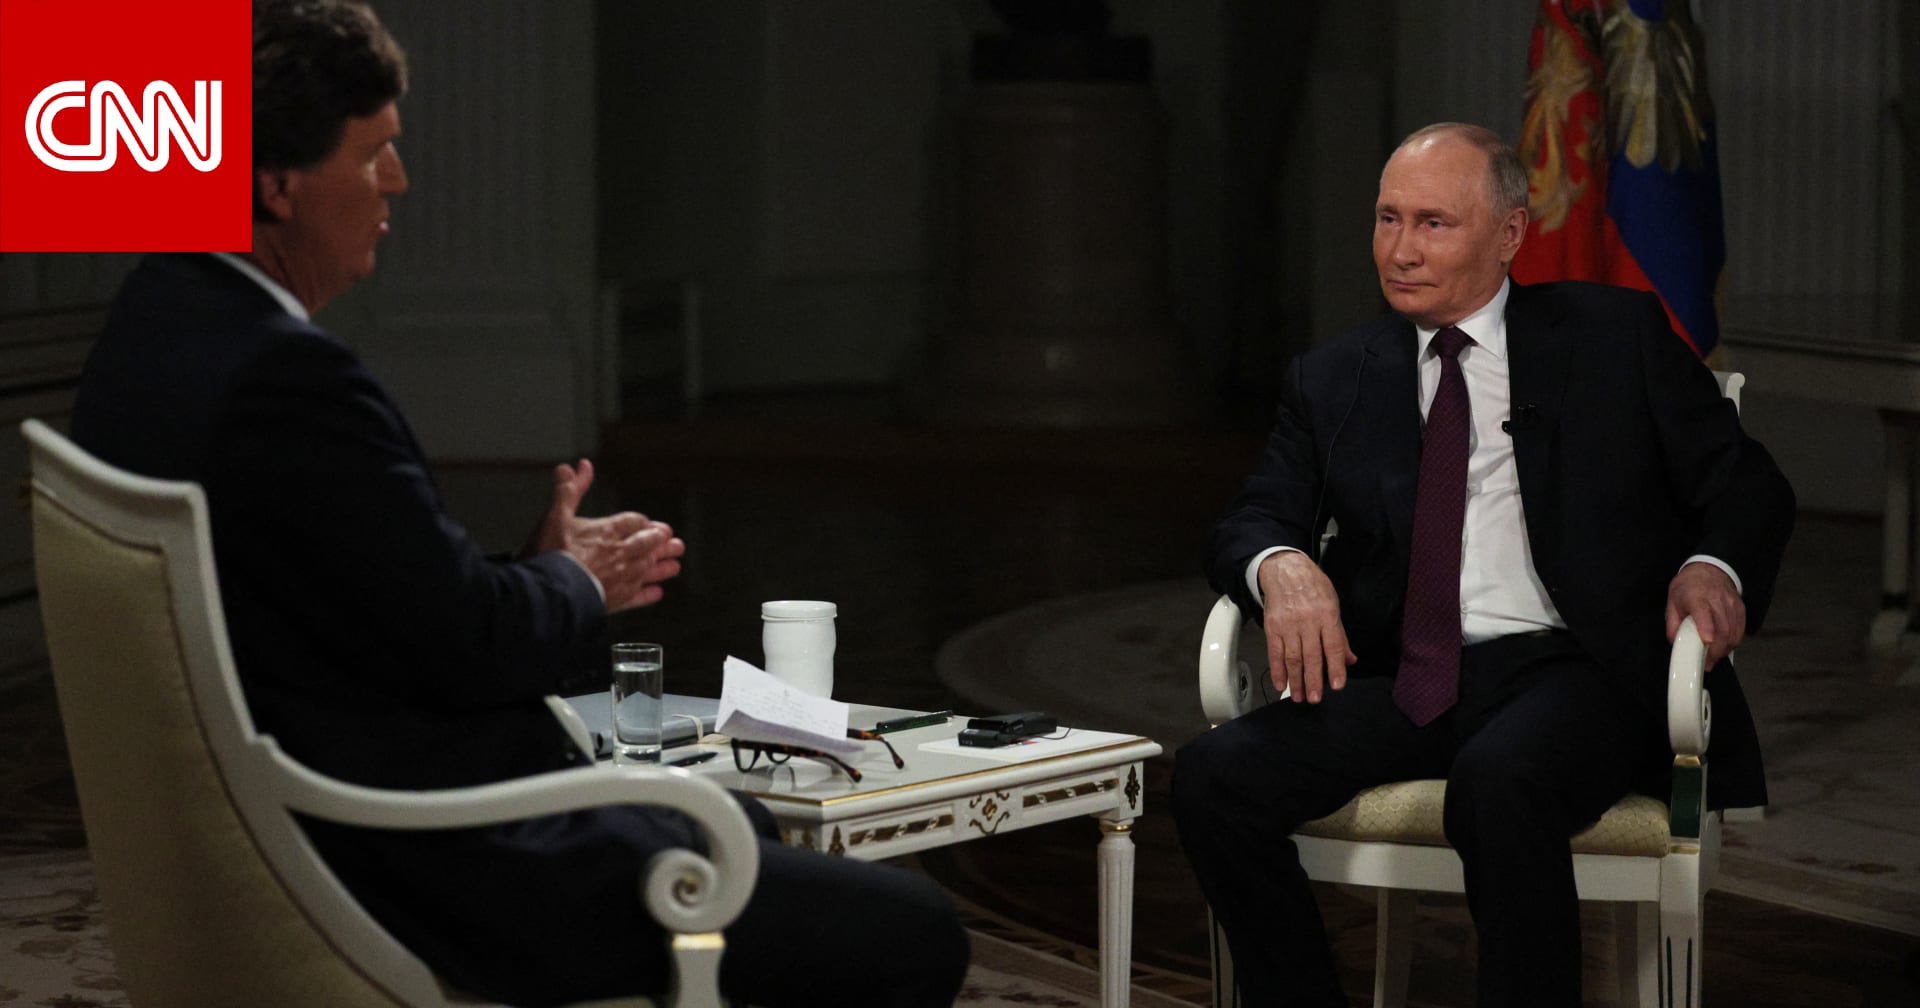 تحليل: بوتين يخرج بانتصار دعائي بعد مقابلة تاكر كارلسون دون أسئلة صعبة